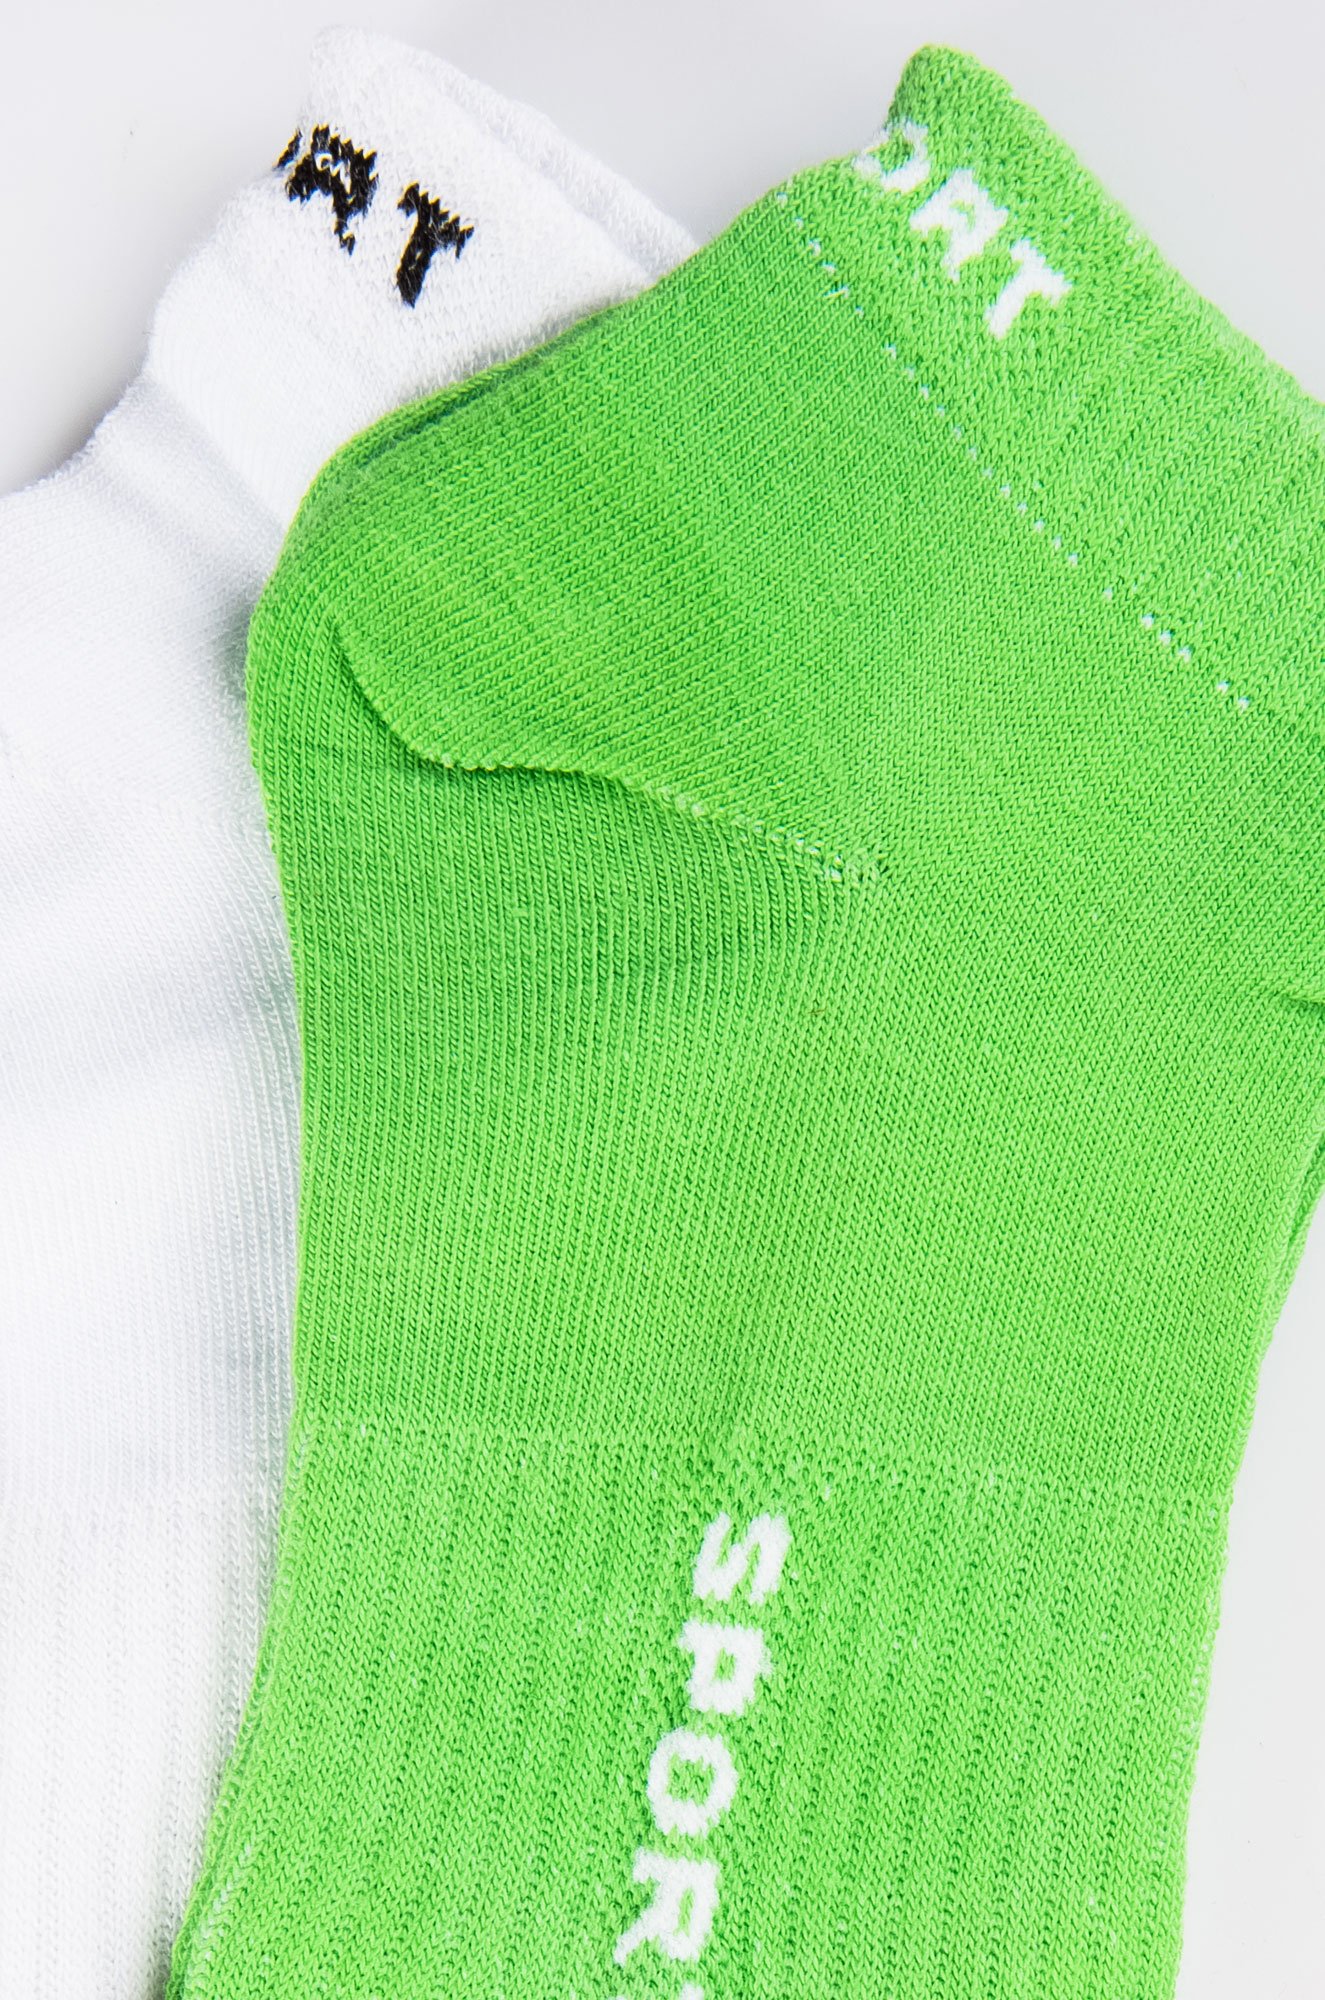 Набор женских носков 2 пары Touch